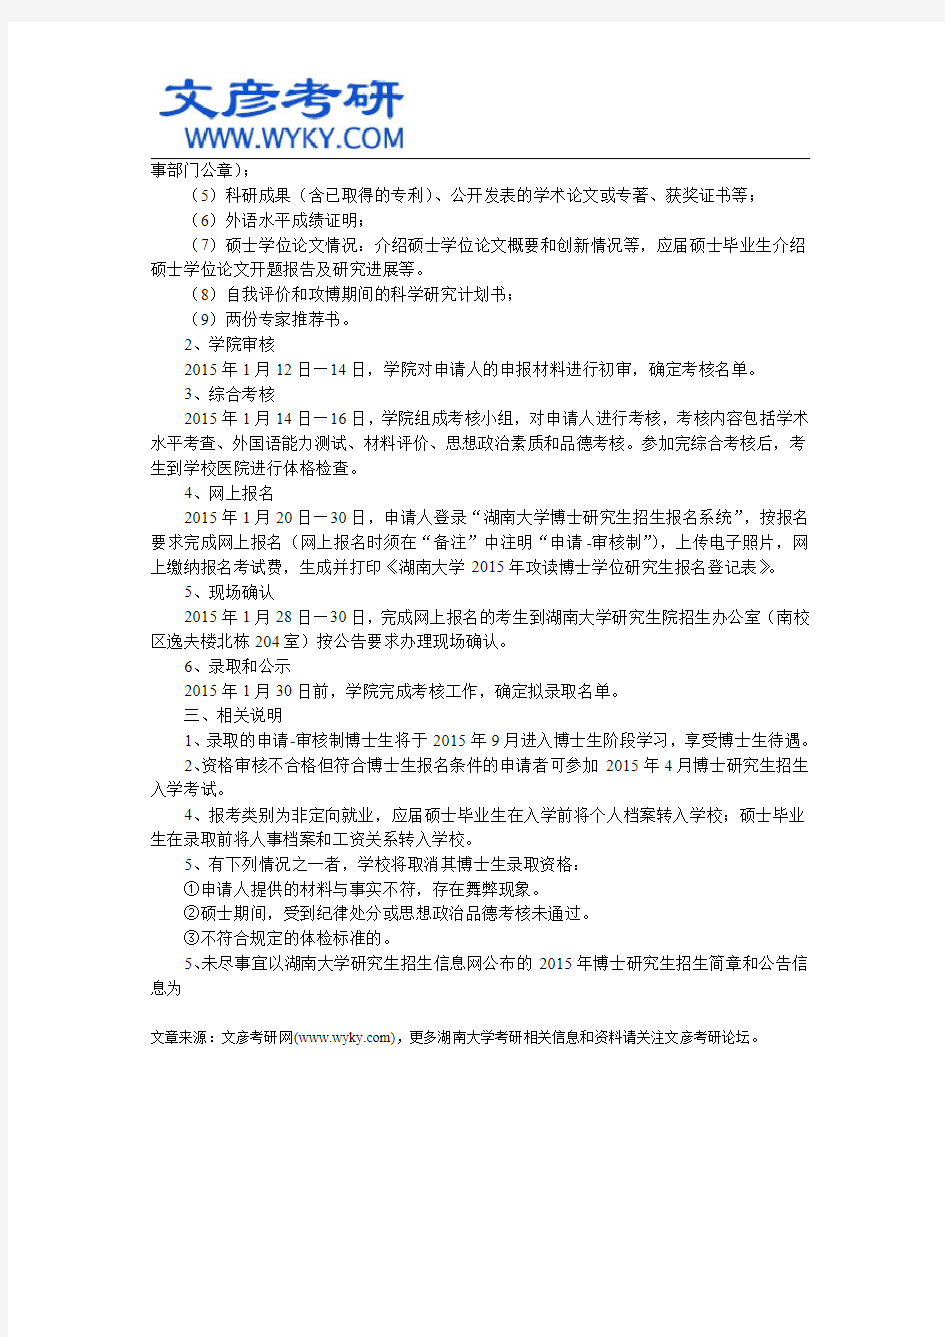 湖南大学2015年申请-审核制博士研究生招生工作通知 _文彦考研